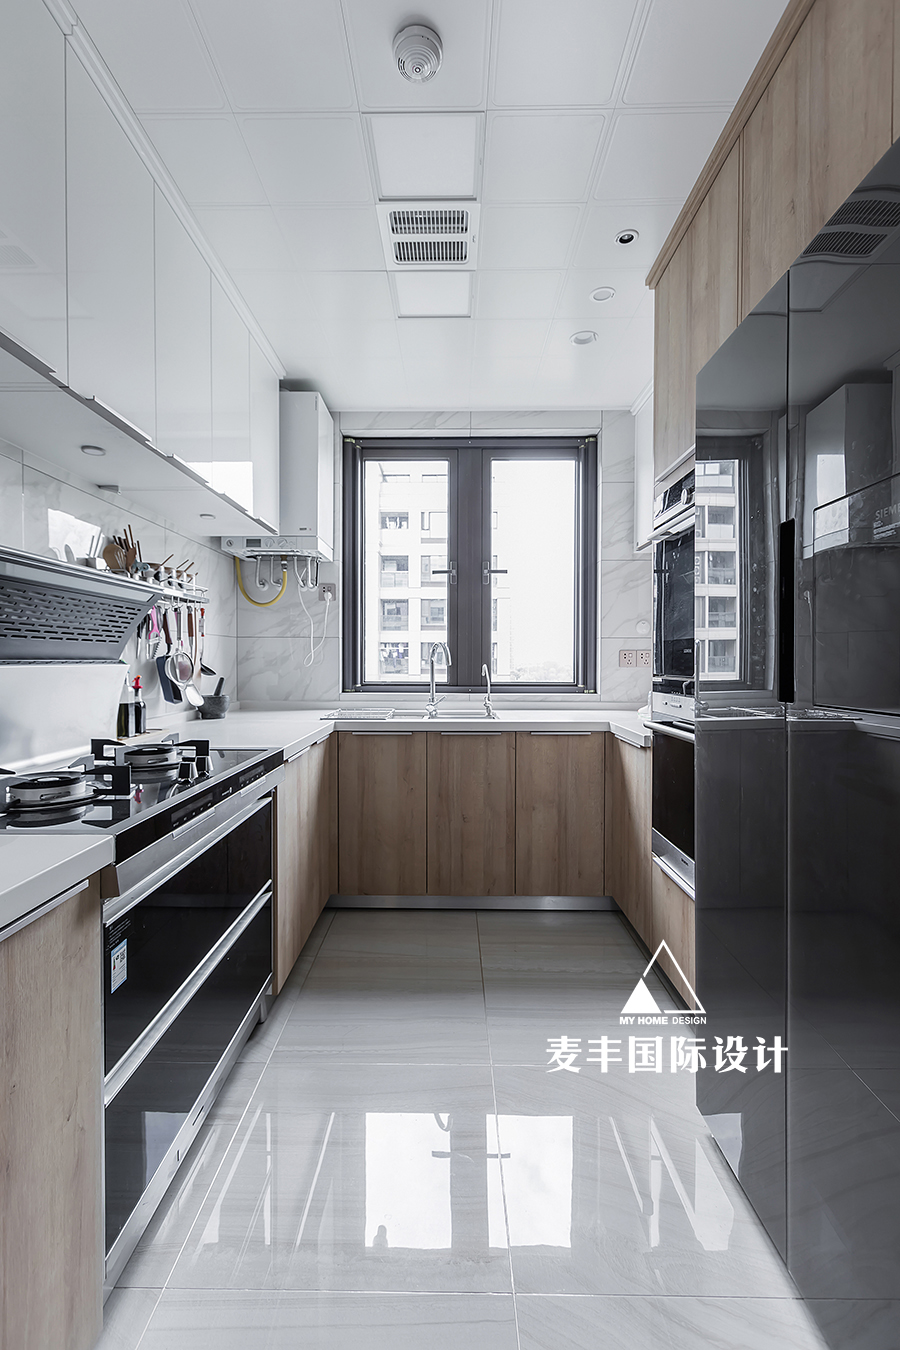 餐厅橱柜装修效果图过往岁月的日系风格厨房设计日式厨房设计图片赏析